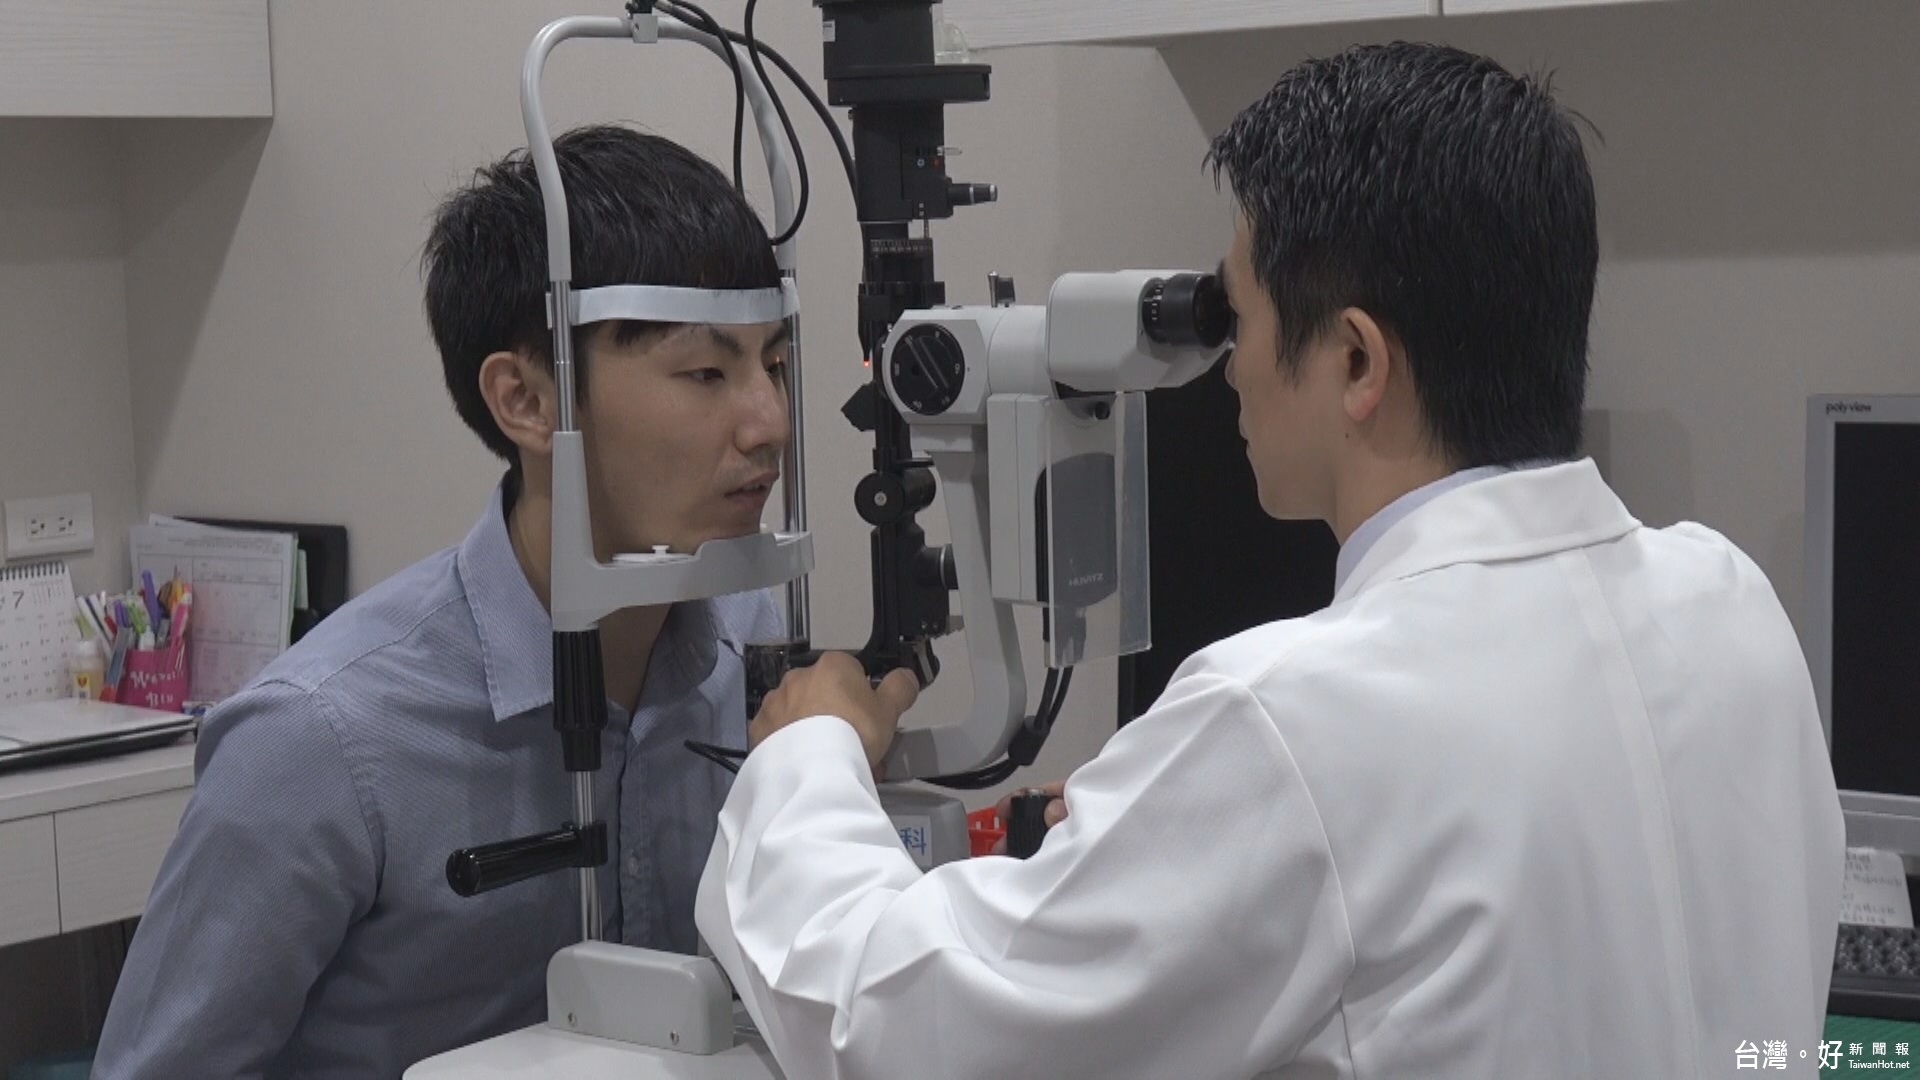 近視老花眼上身　醫師建議雷射矯正需審慎評估